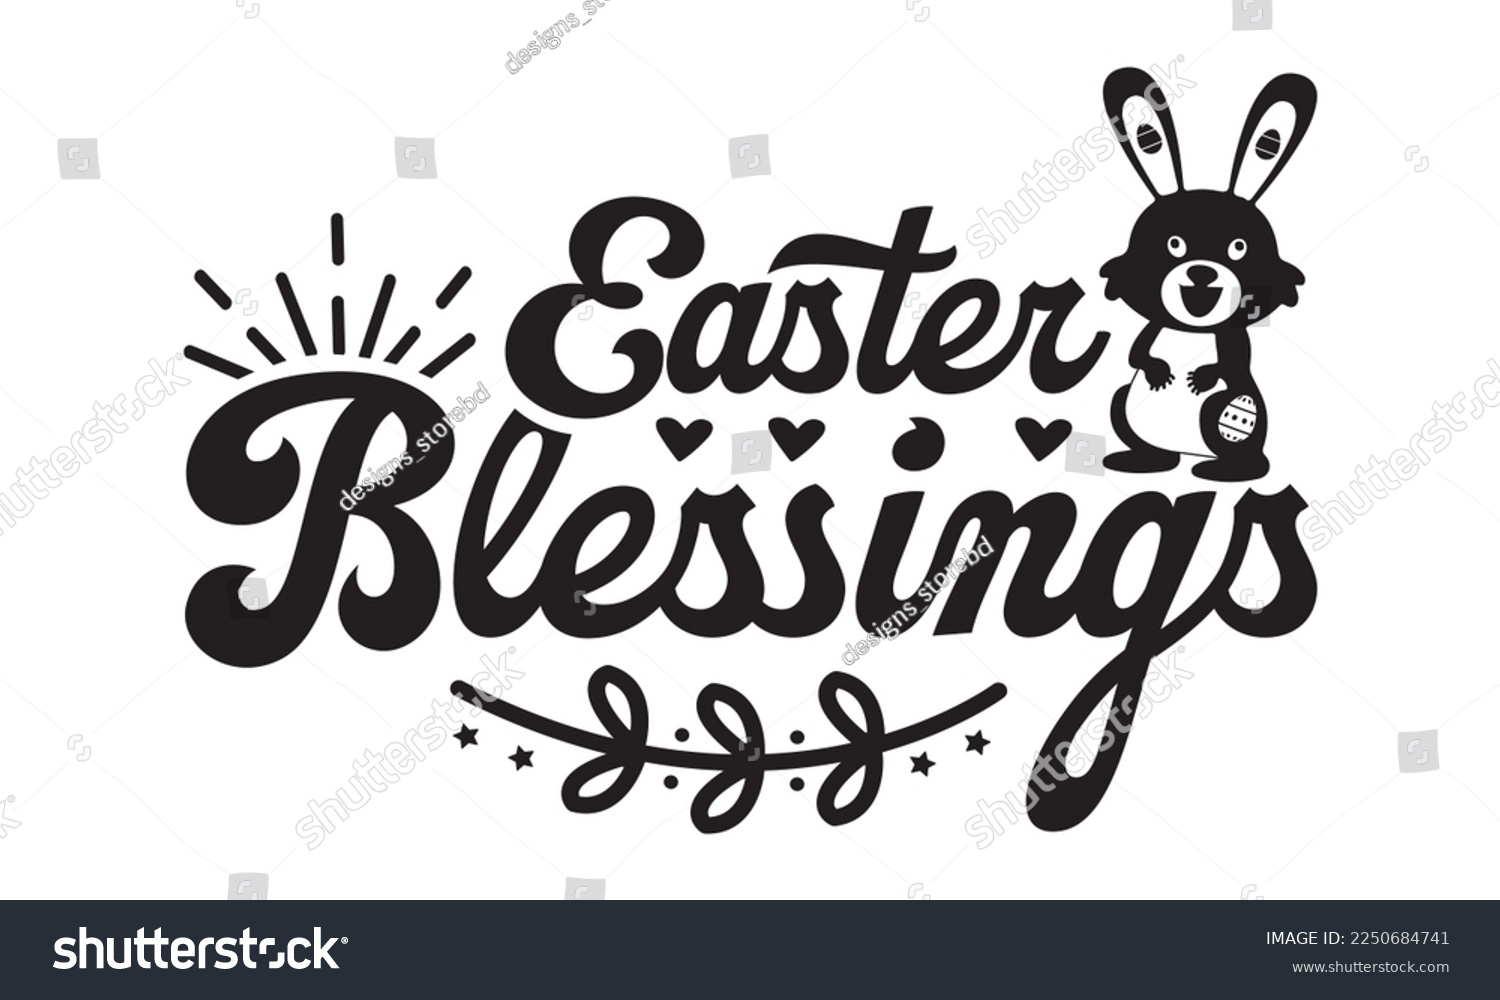 SVG of Easter blessings svg, Easter svg, Happy Easter svg design, Easter Cut File, Hoppy t shirt, Bunny and spring svg, Egg for Kids, Cut File Cricut svg